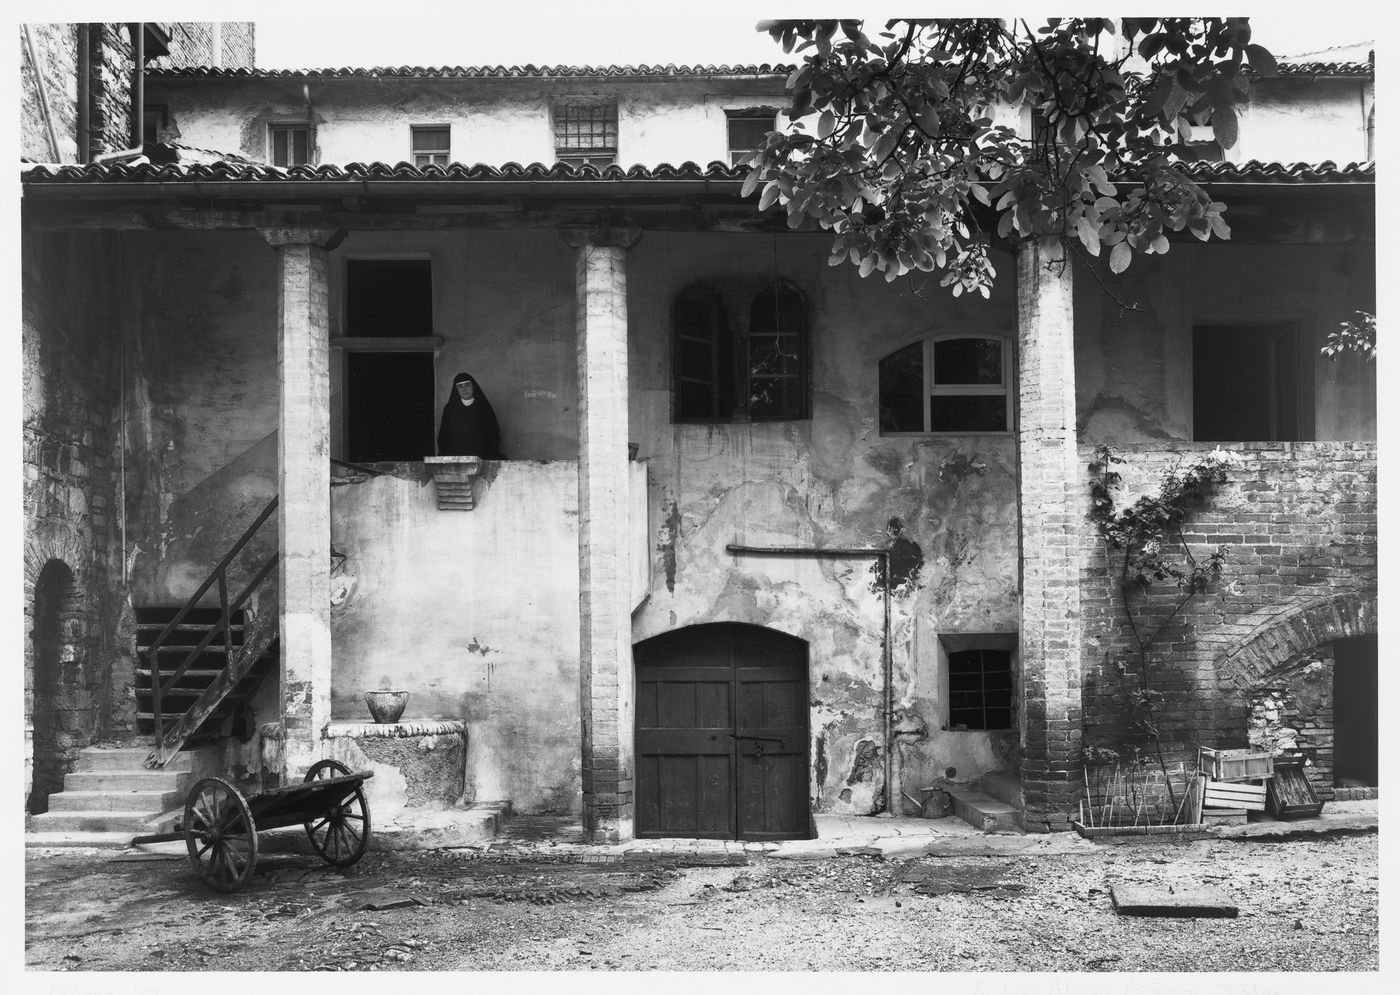 Façade of a house in Foligno, Umbria, Italy